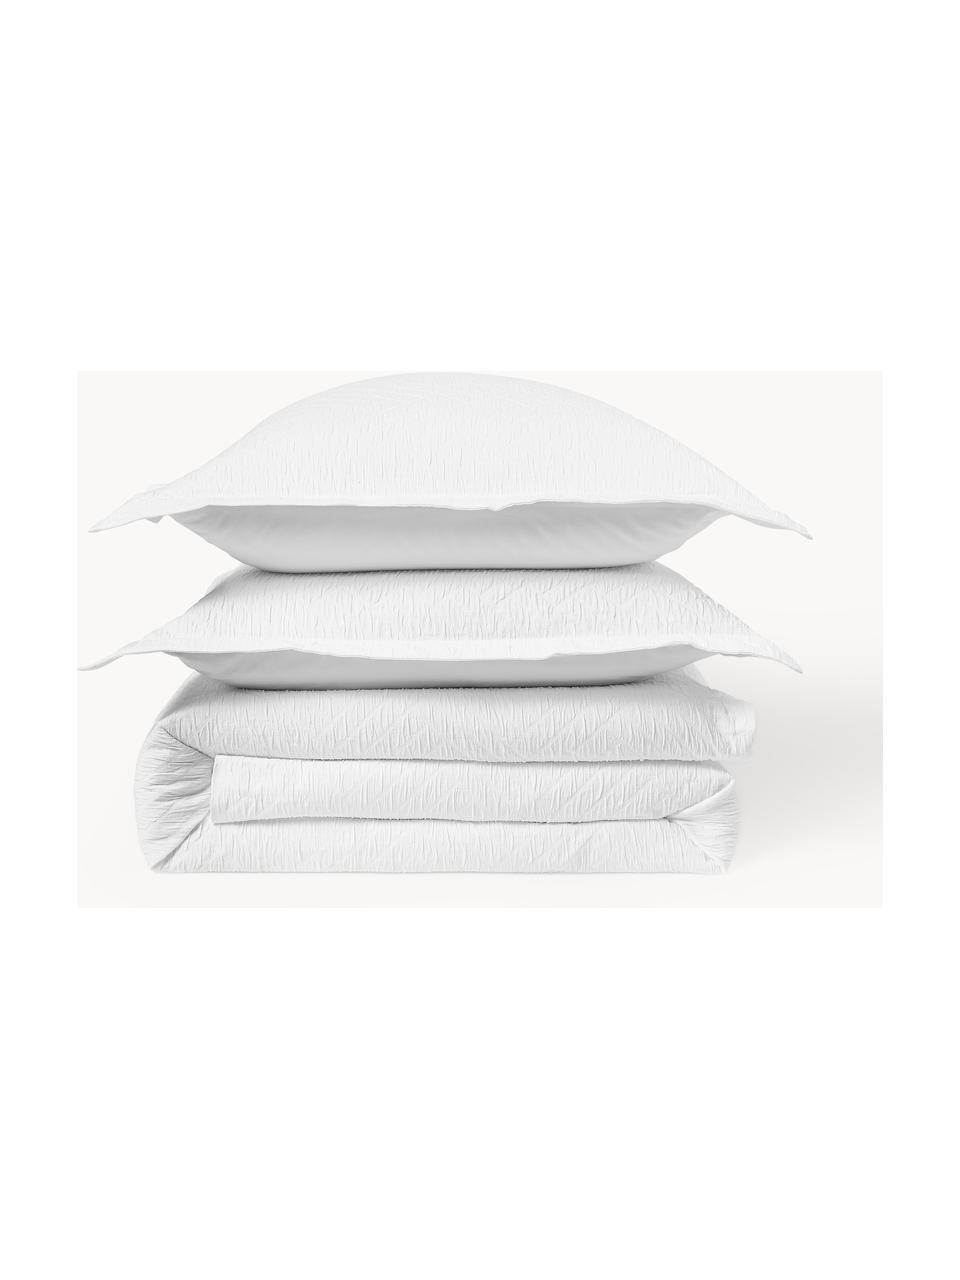 Baumwoll-Bettdeckenbezug Jonie mit strukturierter Oberfläche und Stehsaum, Weiss, B 200 x L 200 cm